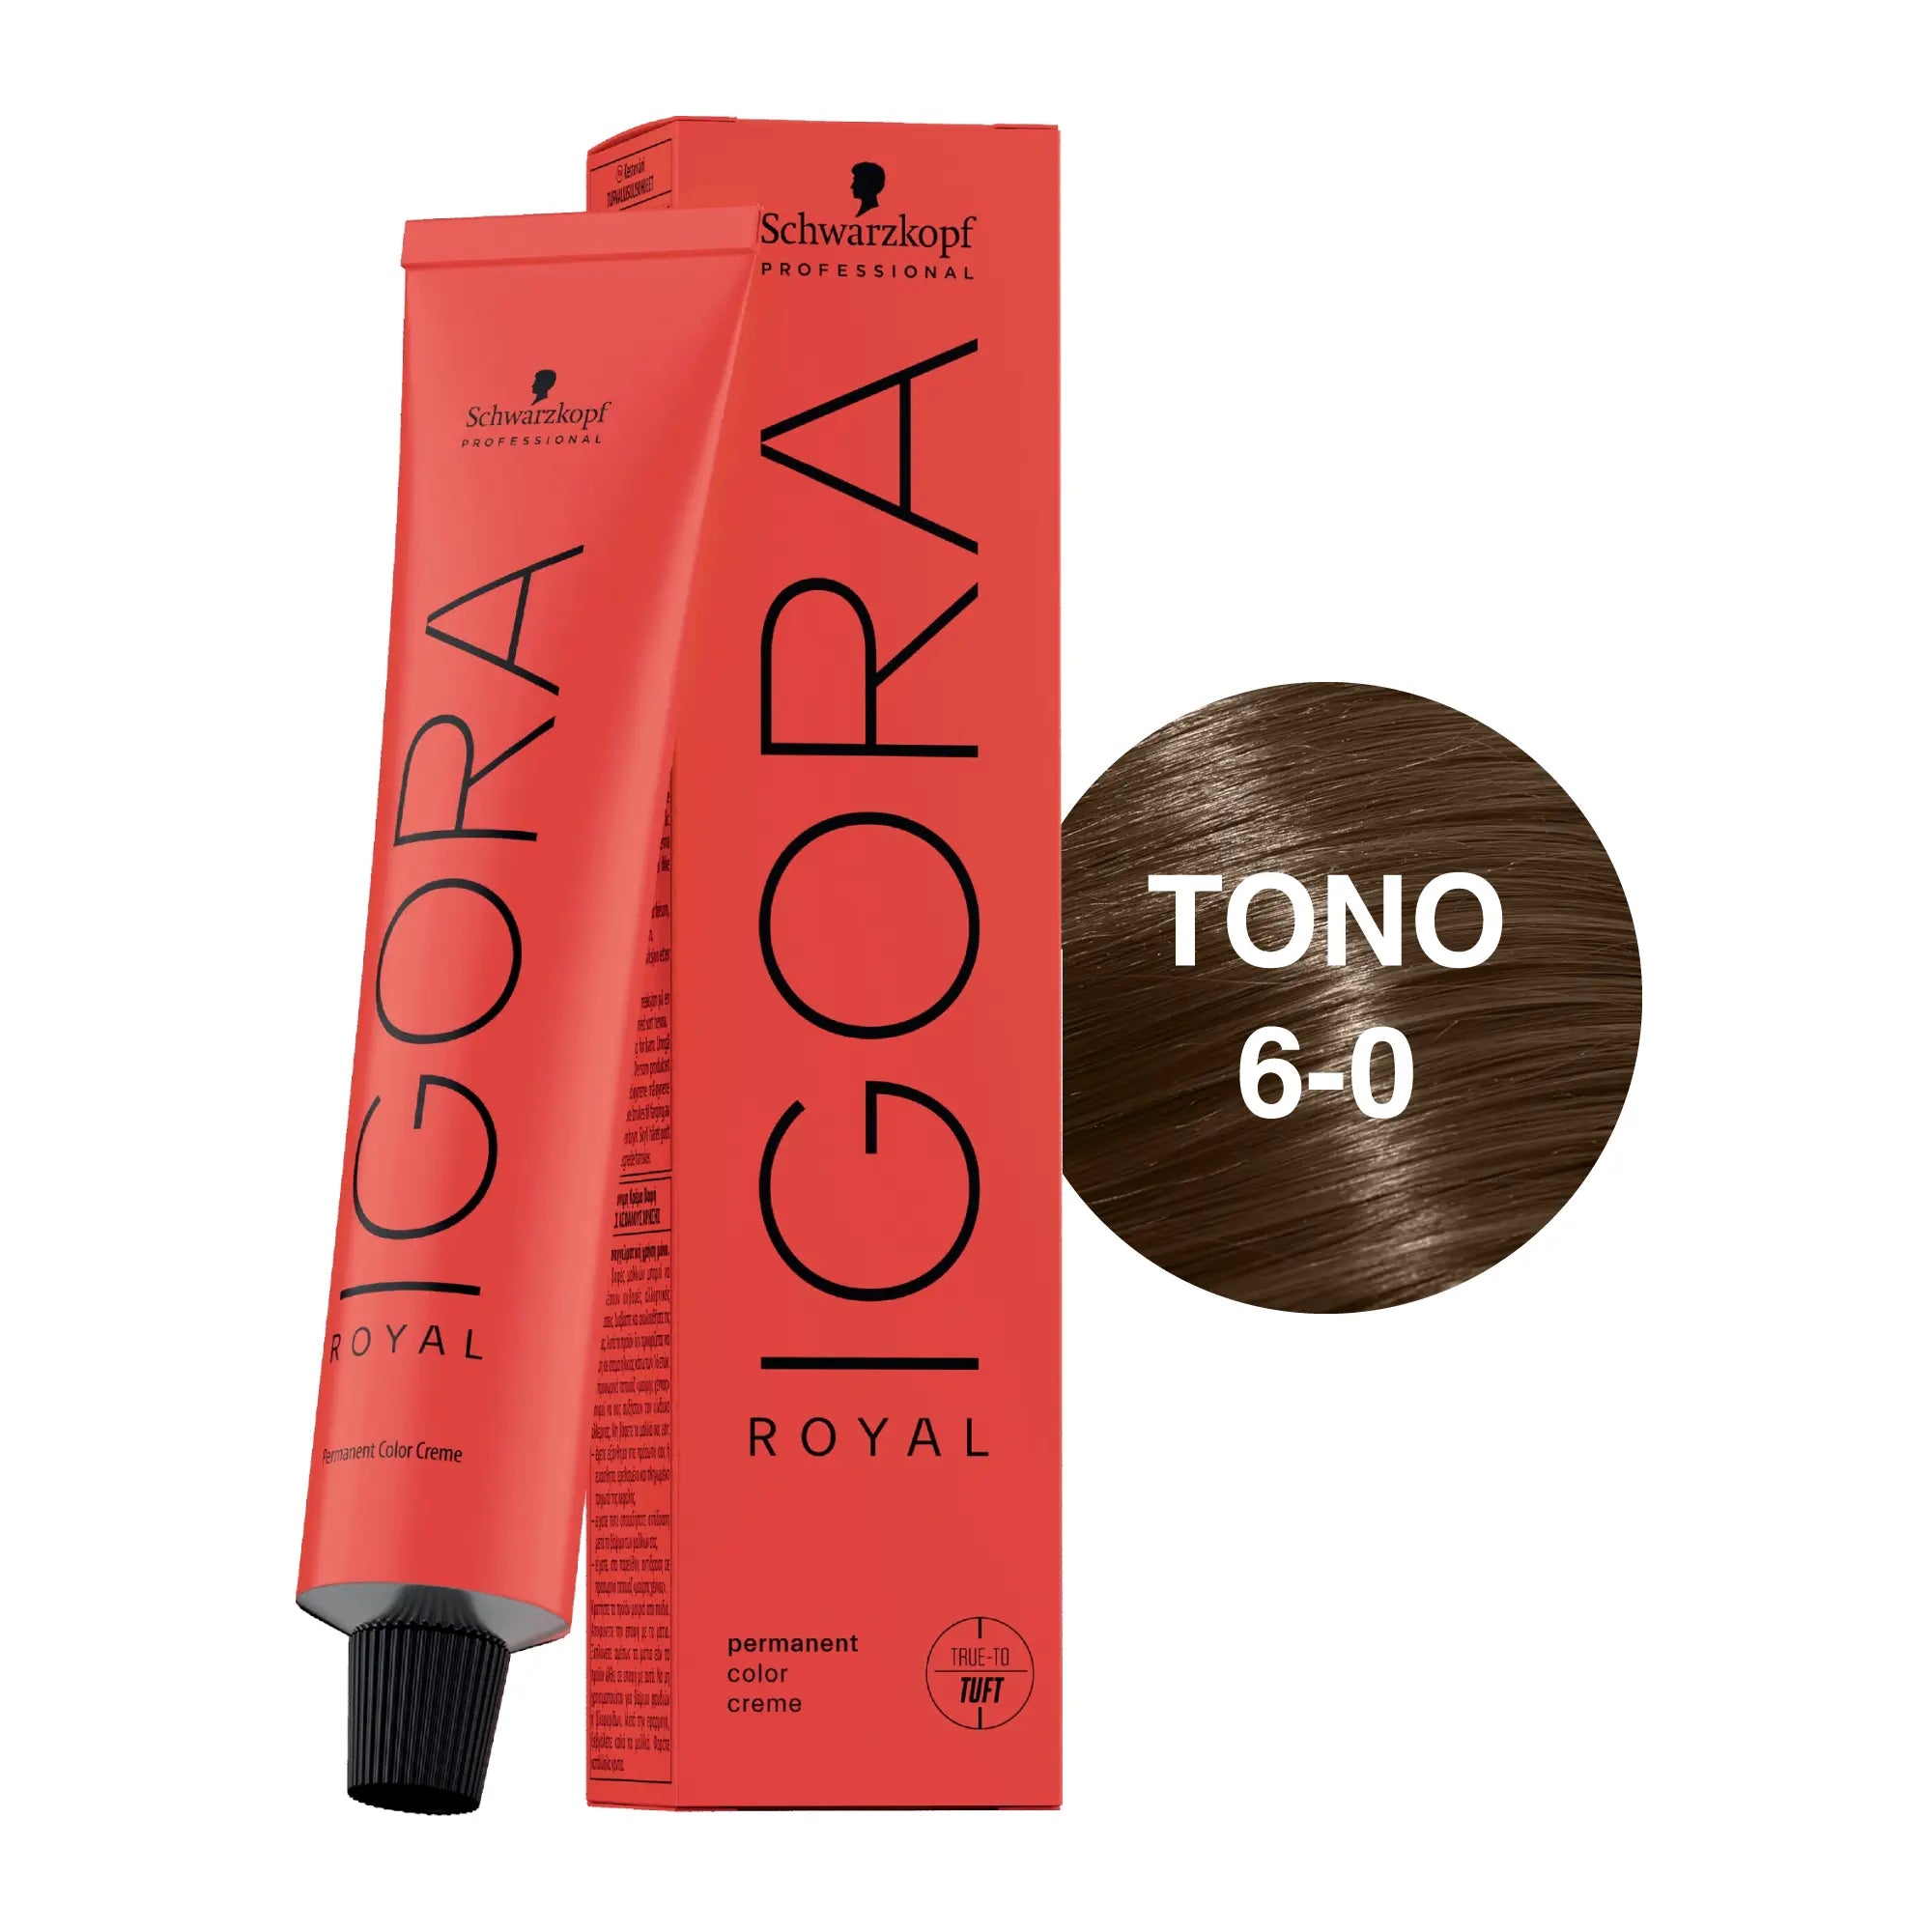 Igora Royal Tono 6-0 Rubio Oscuro Natural 60mL Schwarzkopf Professional